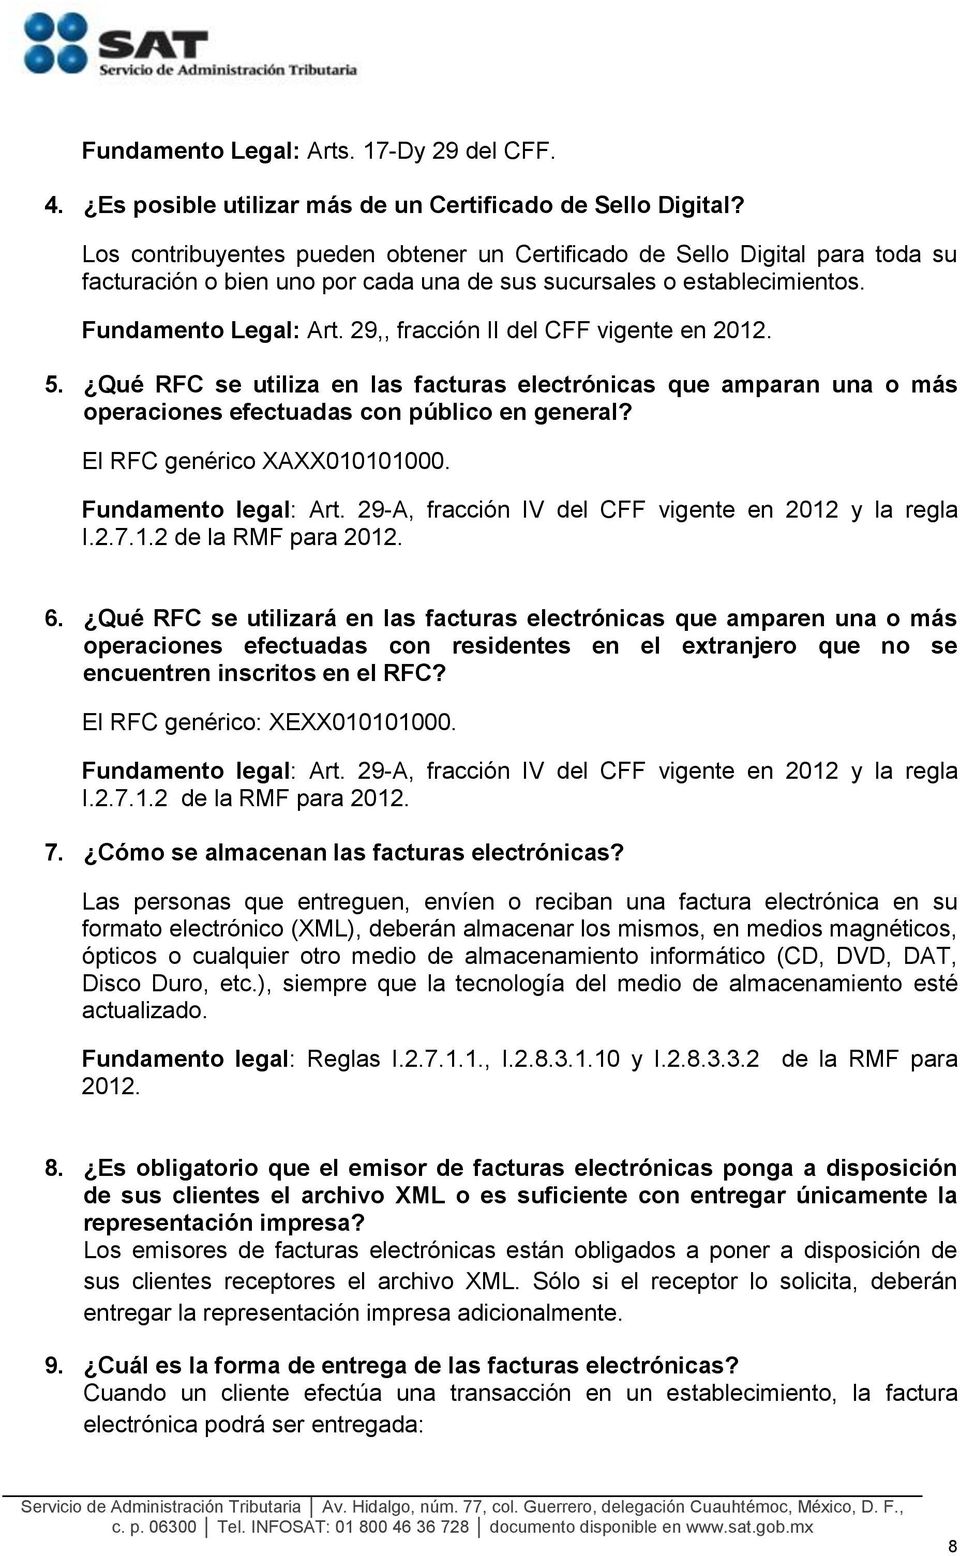 29,, fracción II del CFF vigente en 2012. 5. Qué RFC se utiliza en las facturas electrónicas que amparan una o más operaciones efectuadas con público en general? El RFC genérico XAXX010101000.